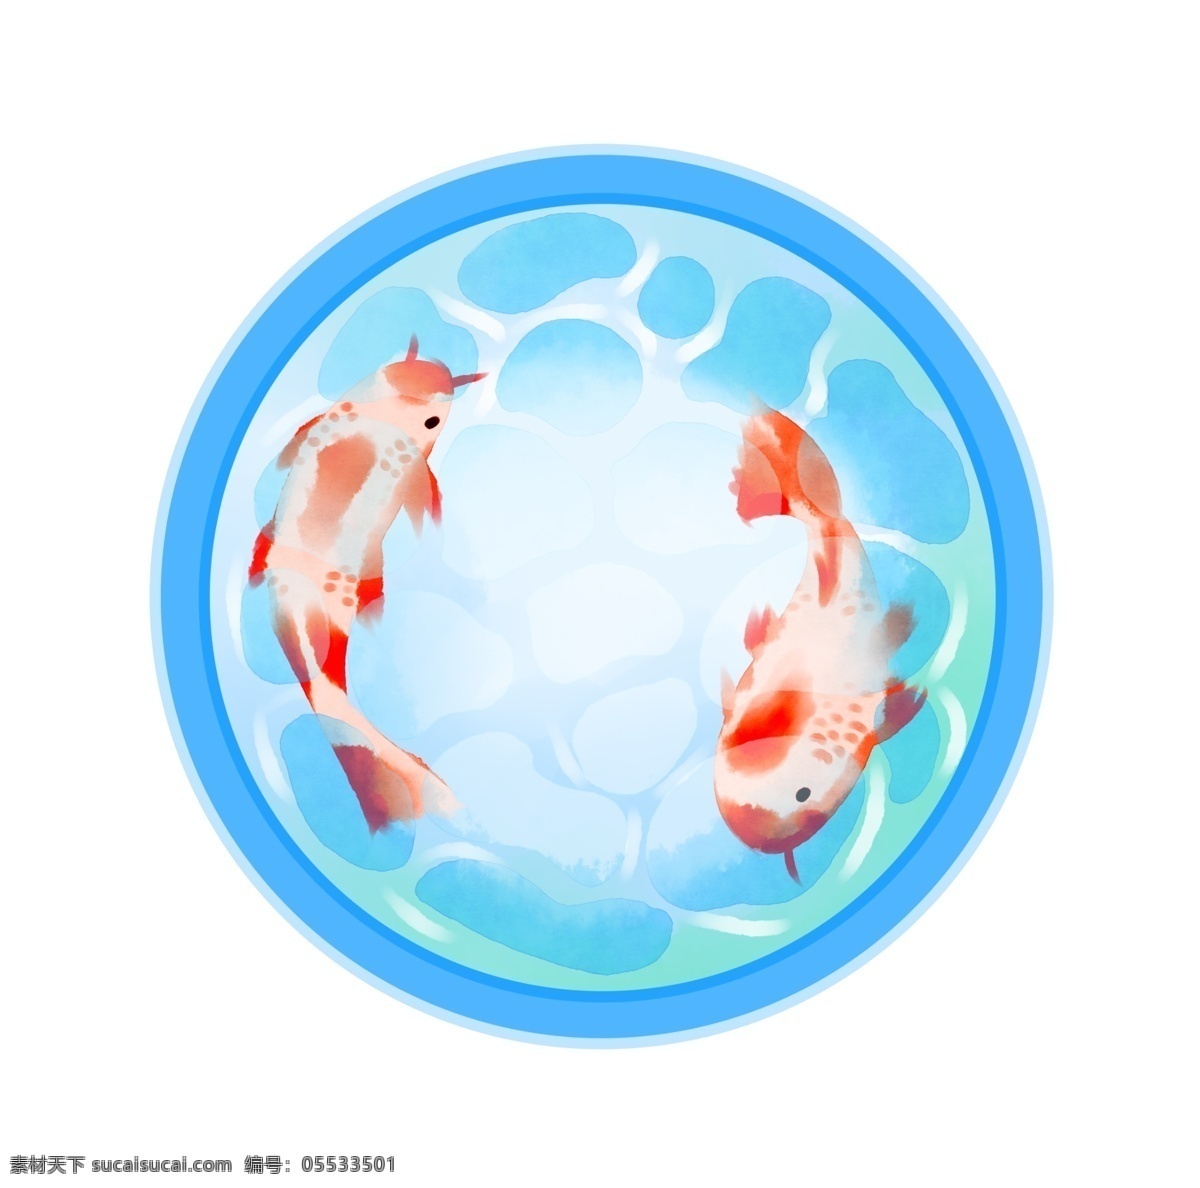 手绘 蓝色 圆形 鱼池 插画 手绘鱼池 蓝色鱼池插画 圆形鱼池 蓝色鱼缸 漂亮的鱼池 水中游动的鱼 鱼池中的金鱼